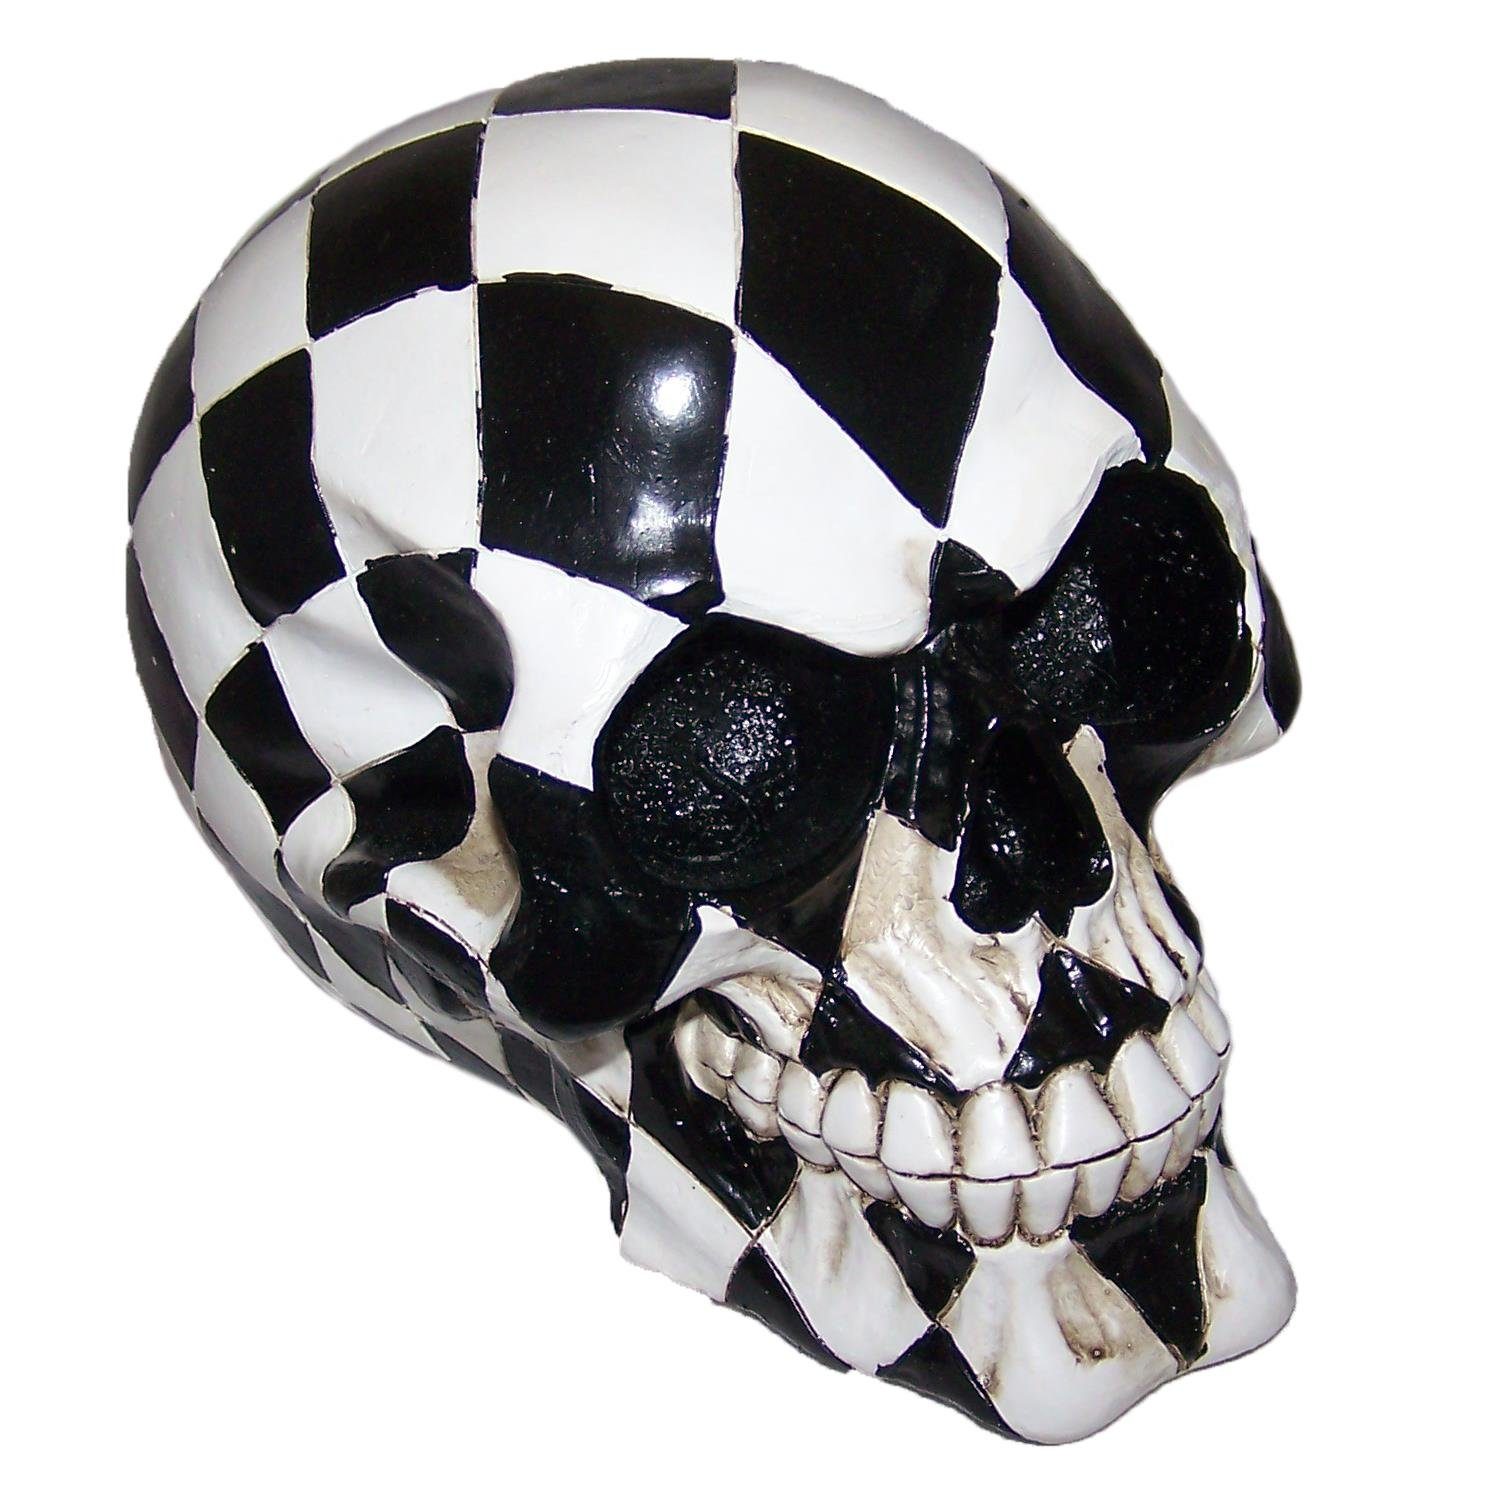 https://i.otto.de/i/otto/4b88686a-76f6-5143-a1da-39f3b4a74c77/piwear-dekofigur-totenkopf-schach-chess-skull-dekoration-deko-schaedel.jpg?$formatz$